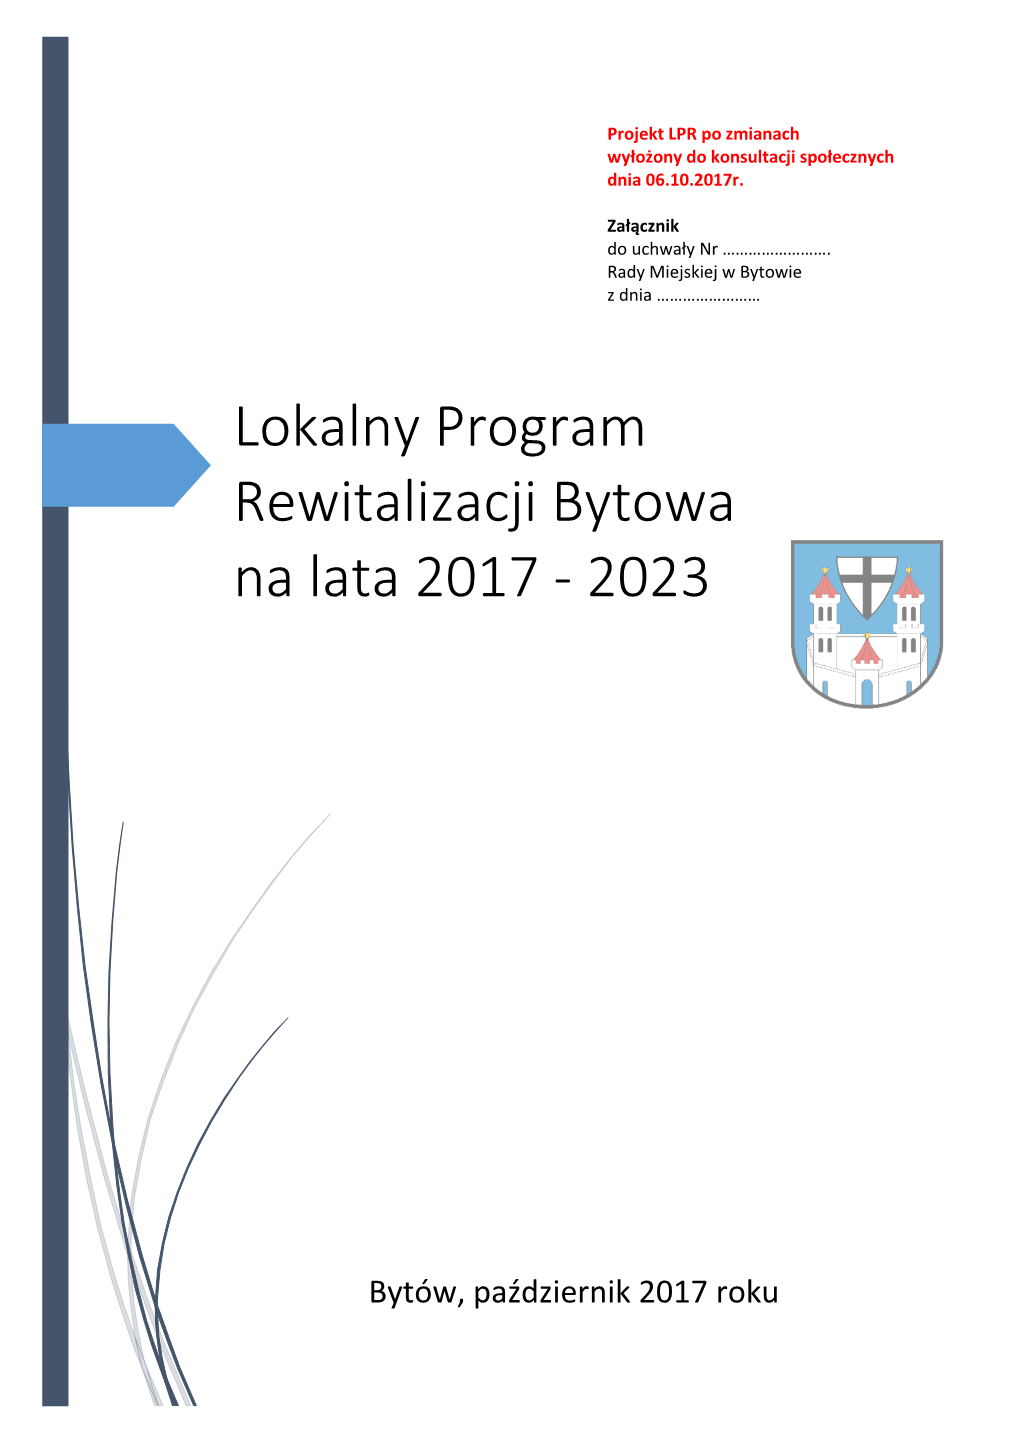 Lokalny Program Rewitalizacji Bytowa Na Lata 2017 - 2023